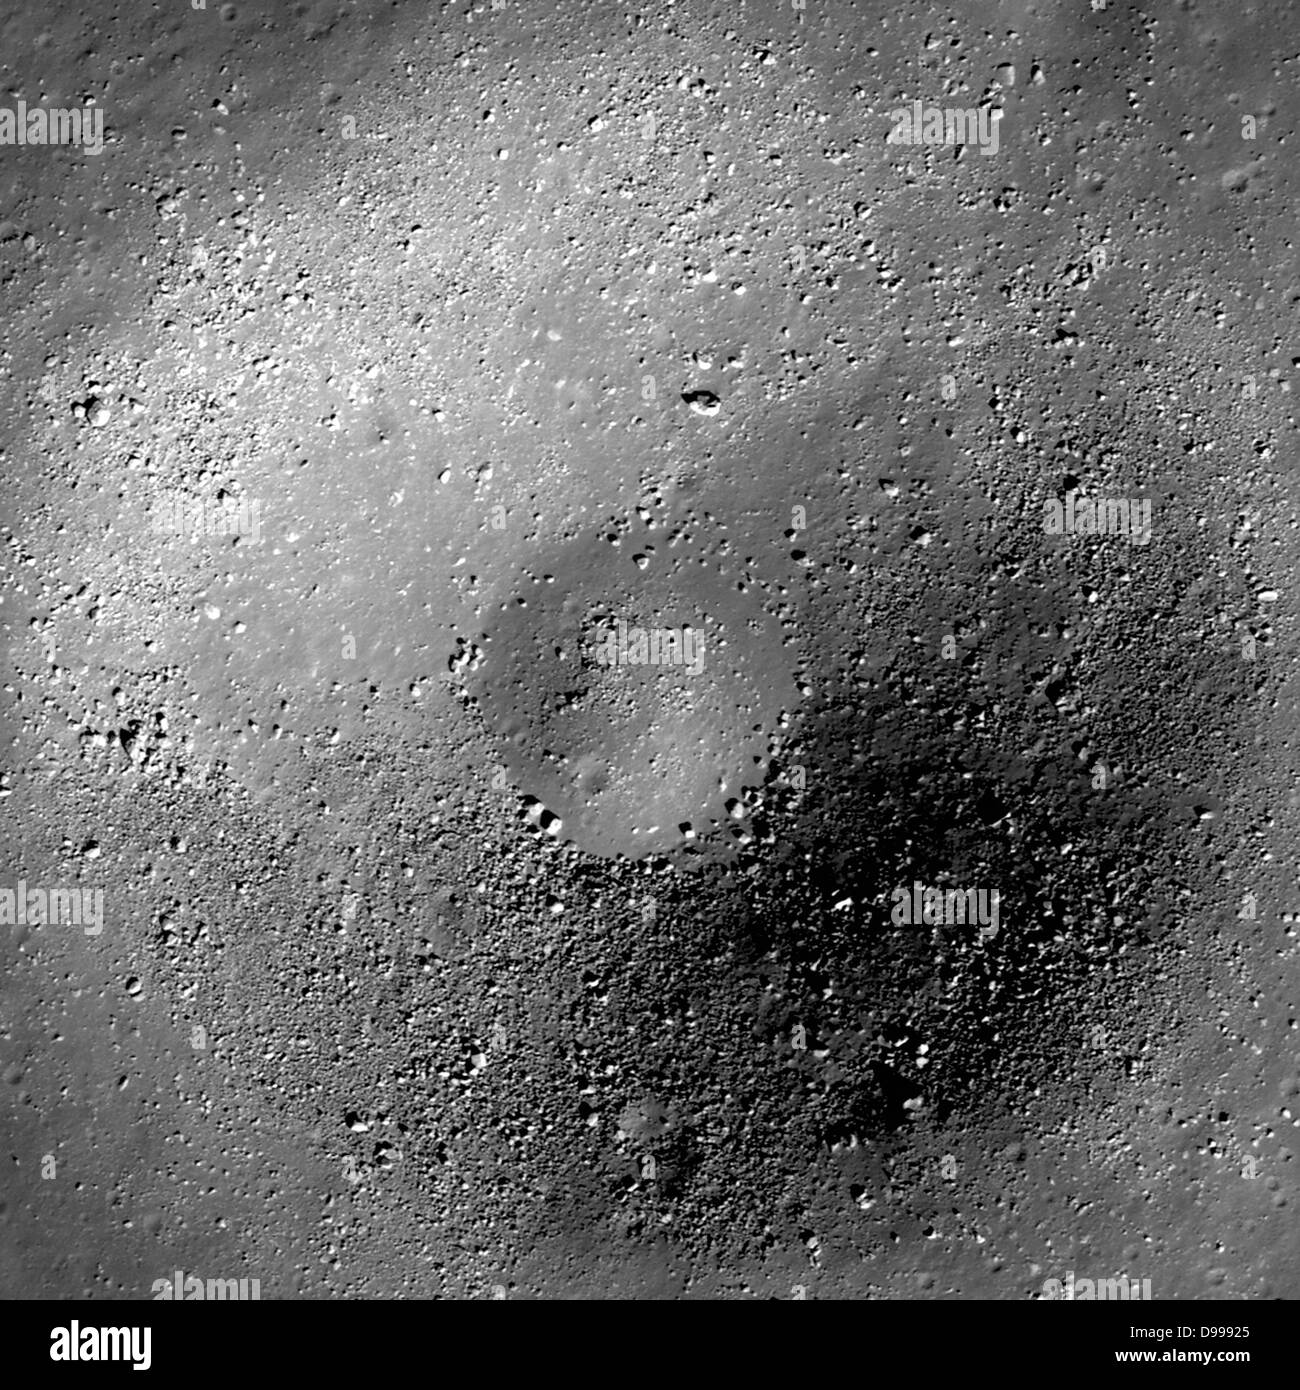 Ein 740 Meter Durchmesser Krater mit beim Mauern. Stockfoto